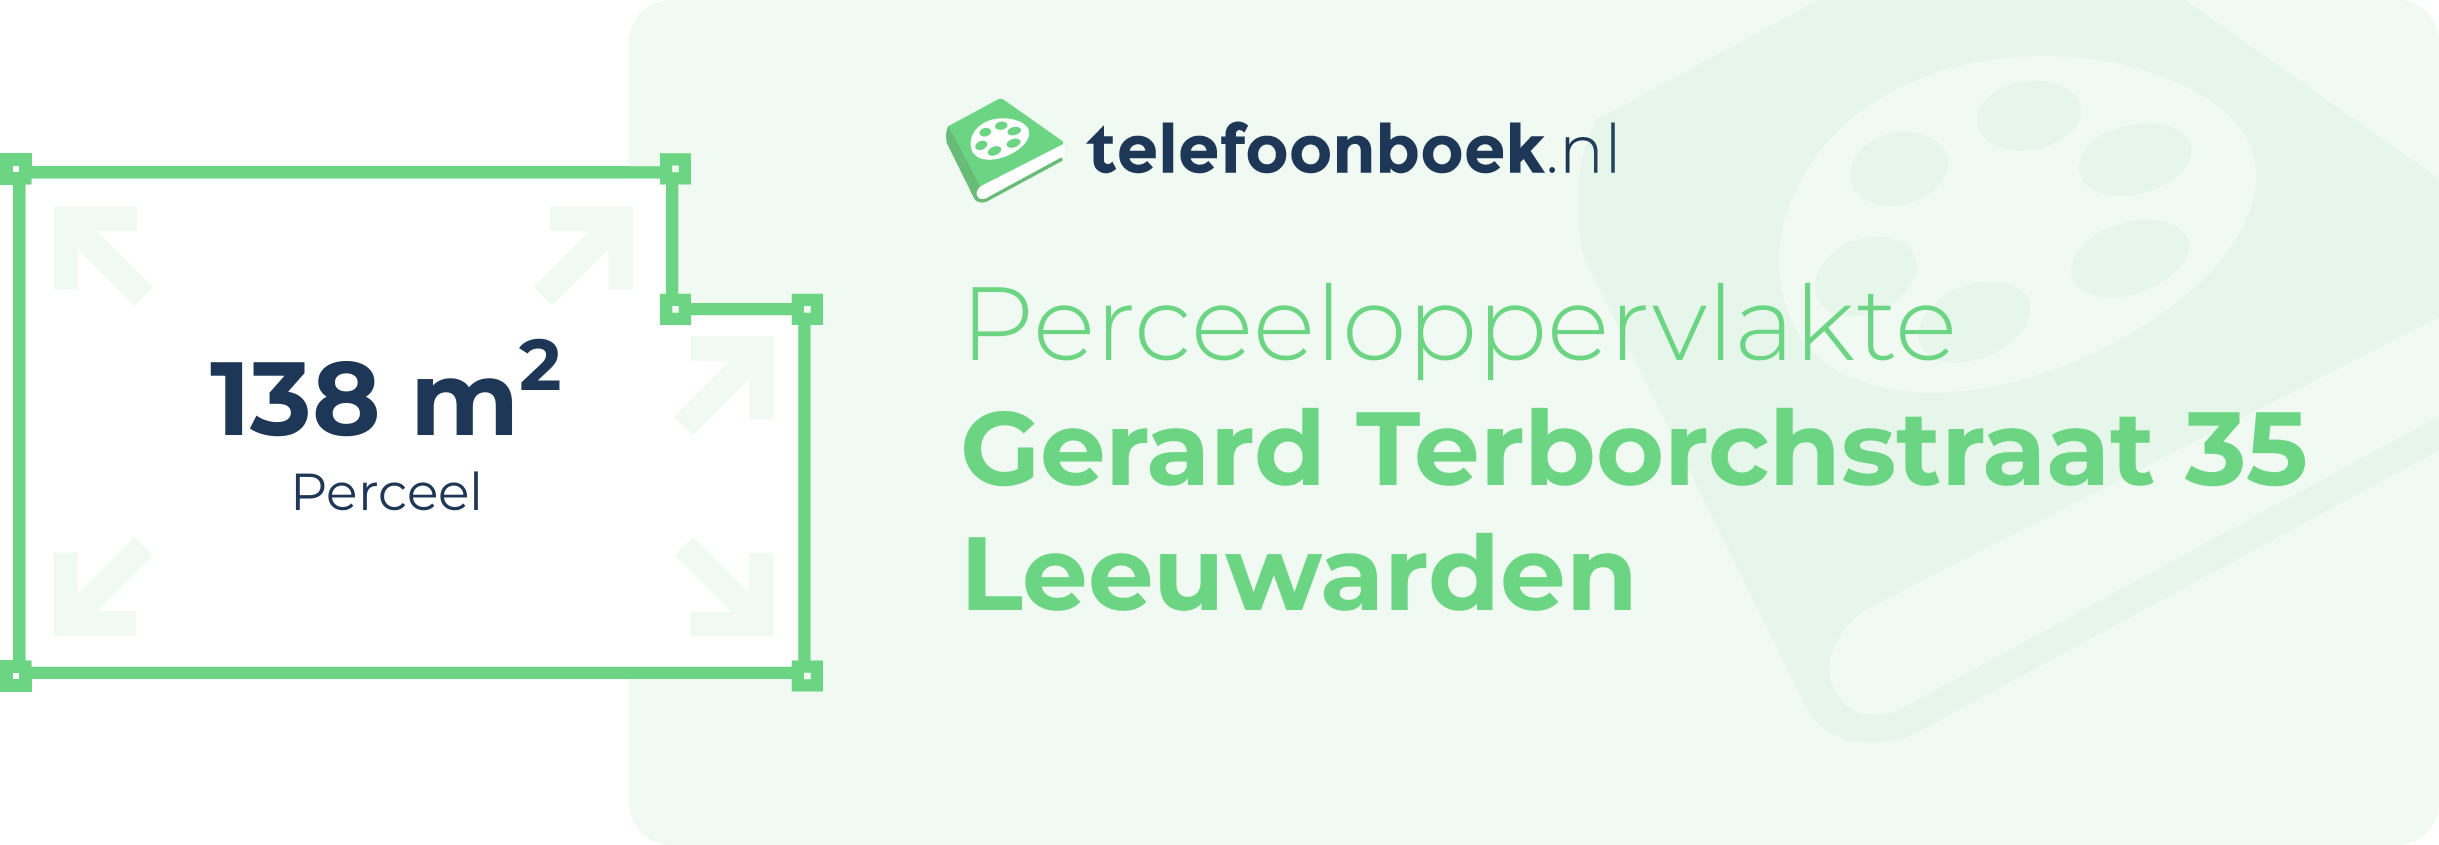 Perceeloppervlakte Gerard Terborchstraat 35 Leeuwarden